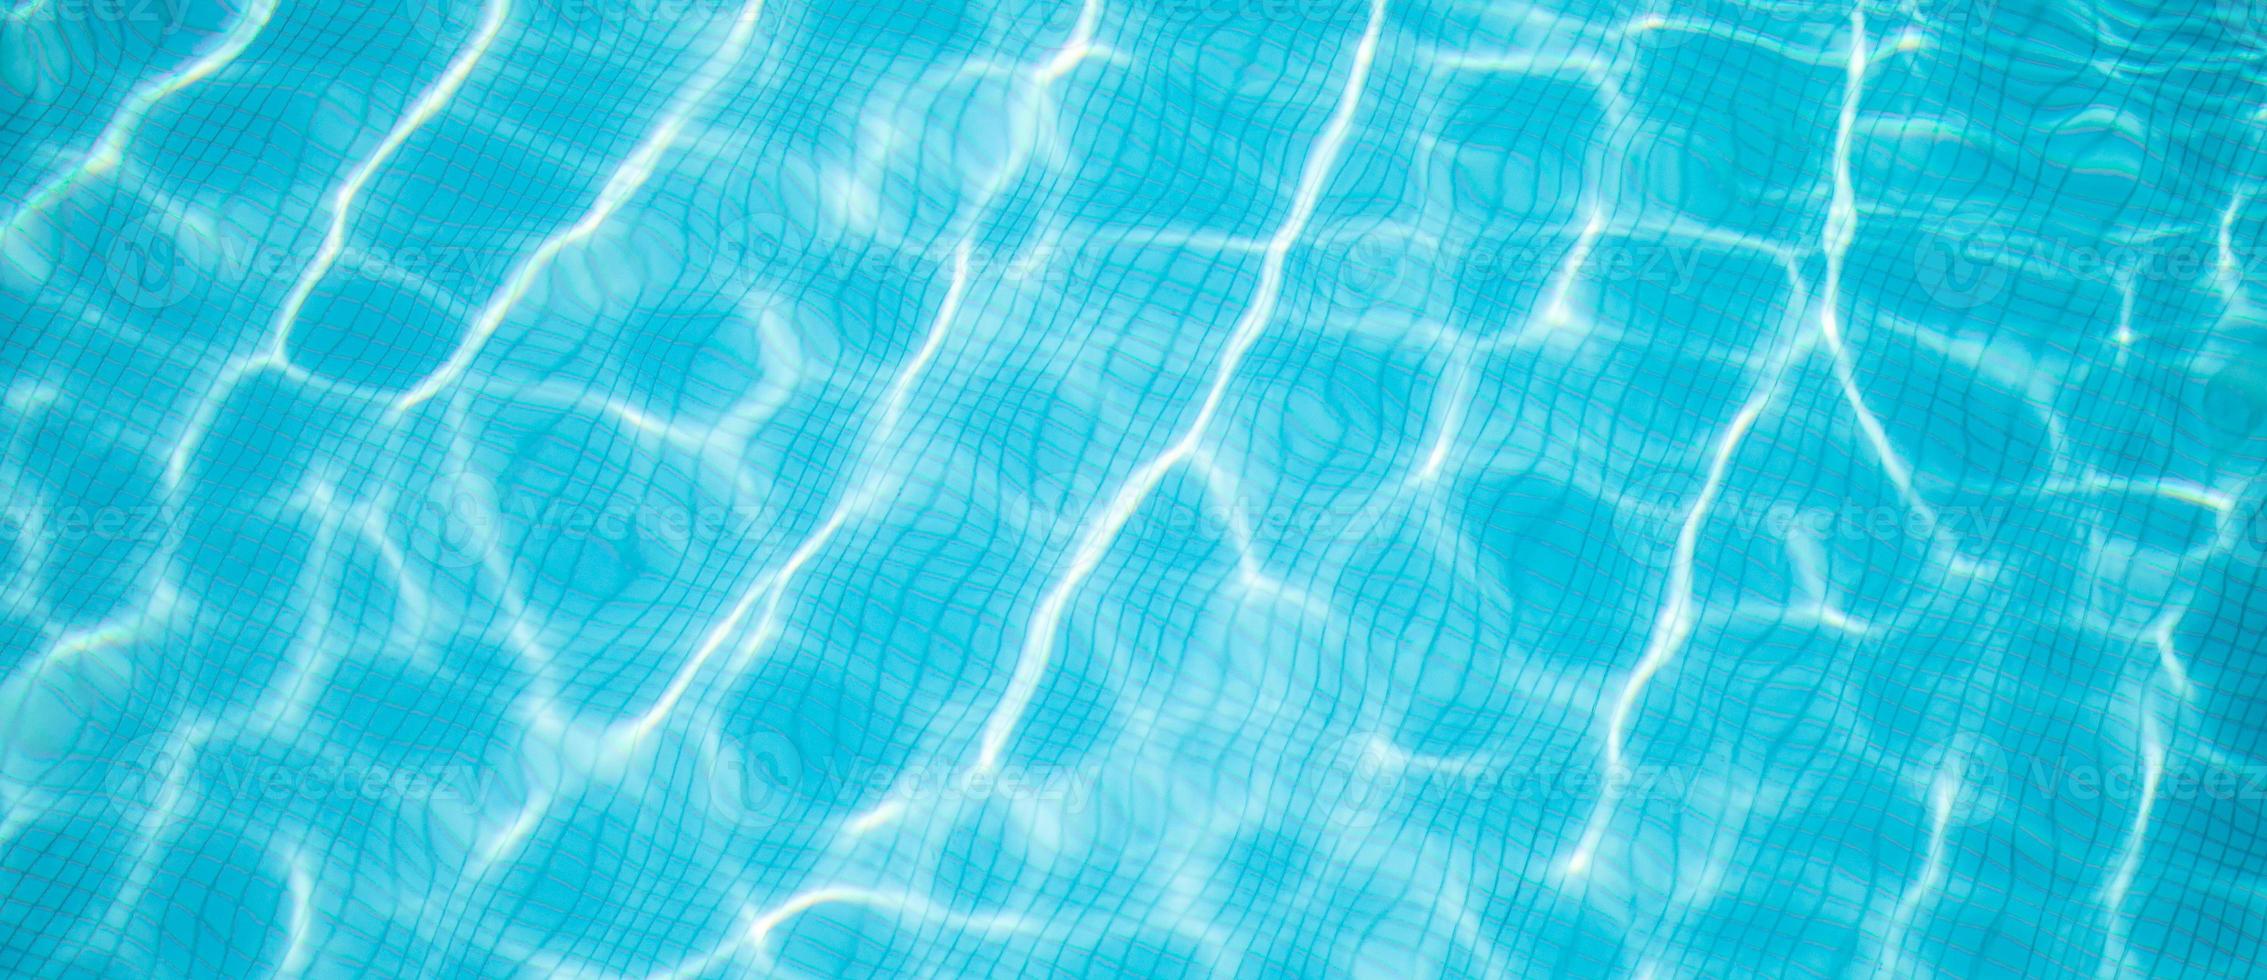 superficie de la piscina azul, fondo de agua en la piscina. diversión de verano, actividad recreativa al aire libre, superficie de agua azul soleada foto